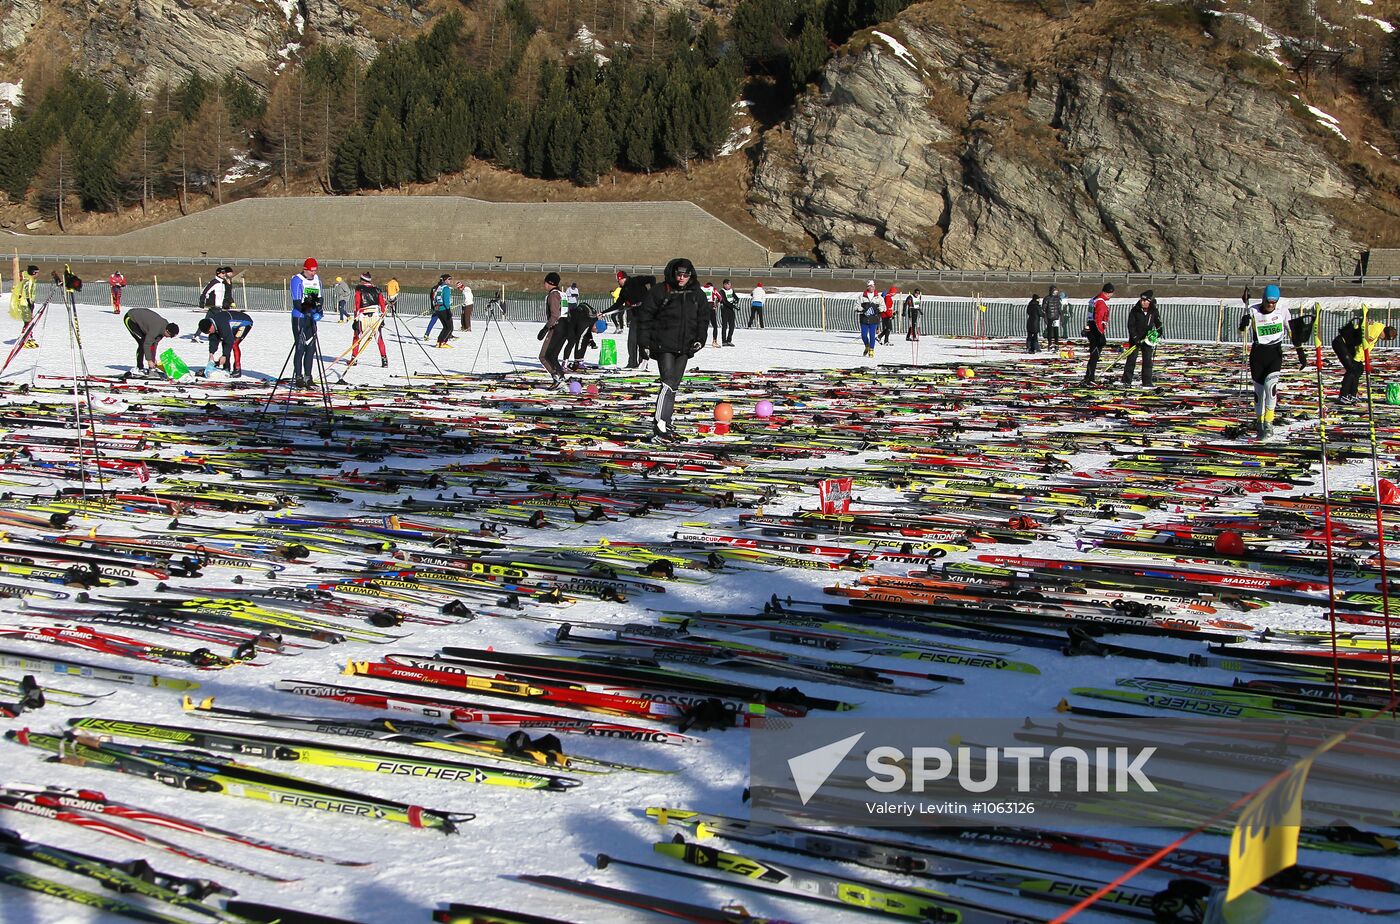 44th Ski Marathon in Switzerland